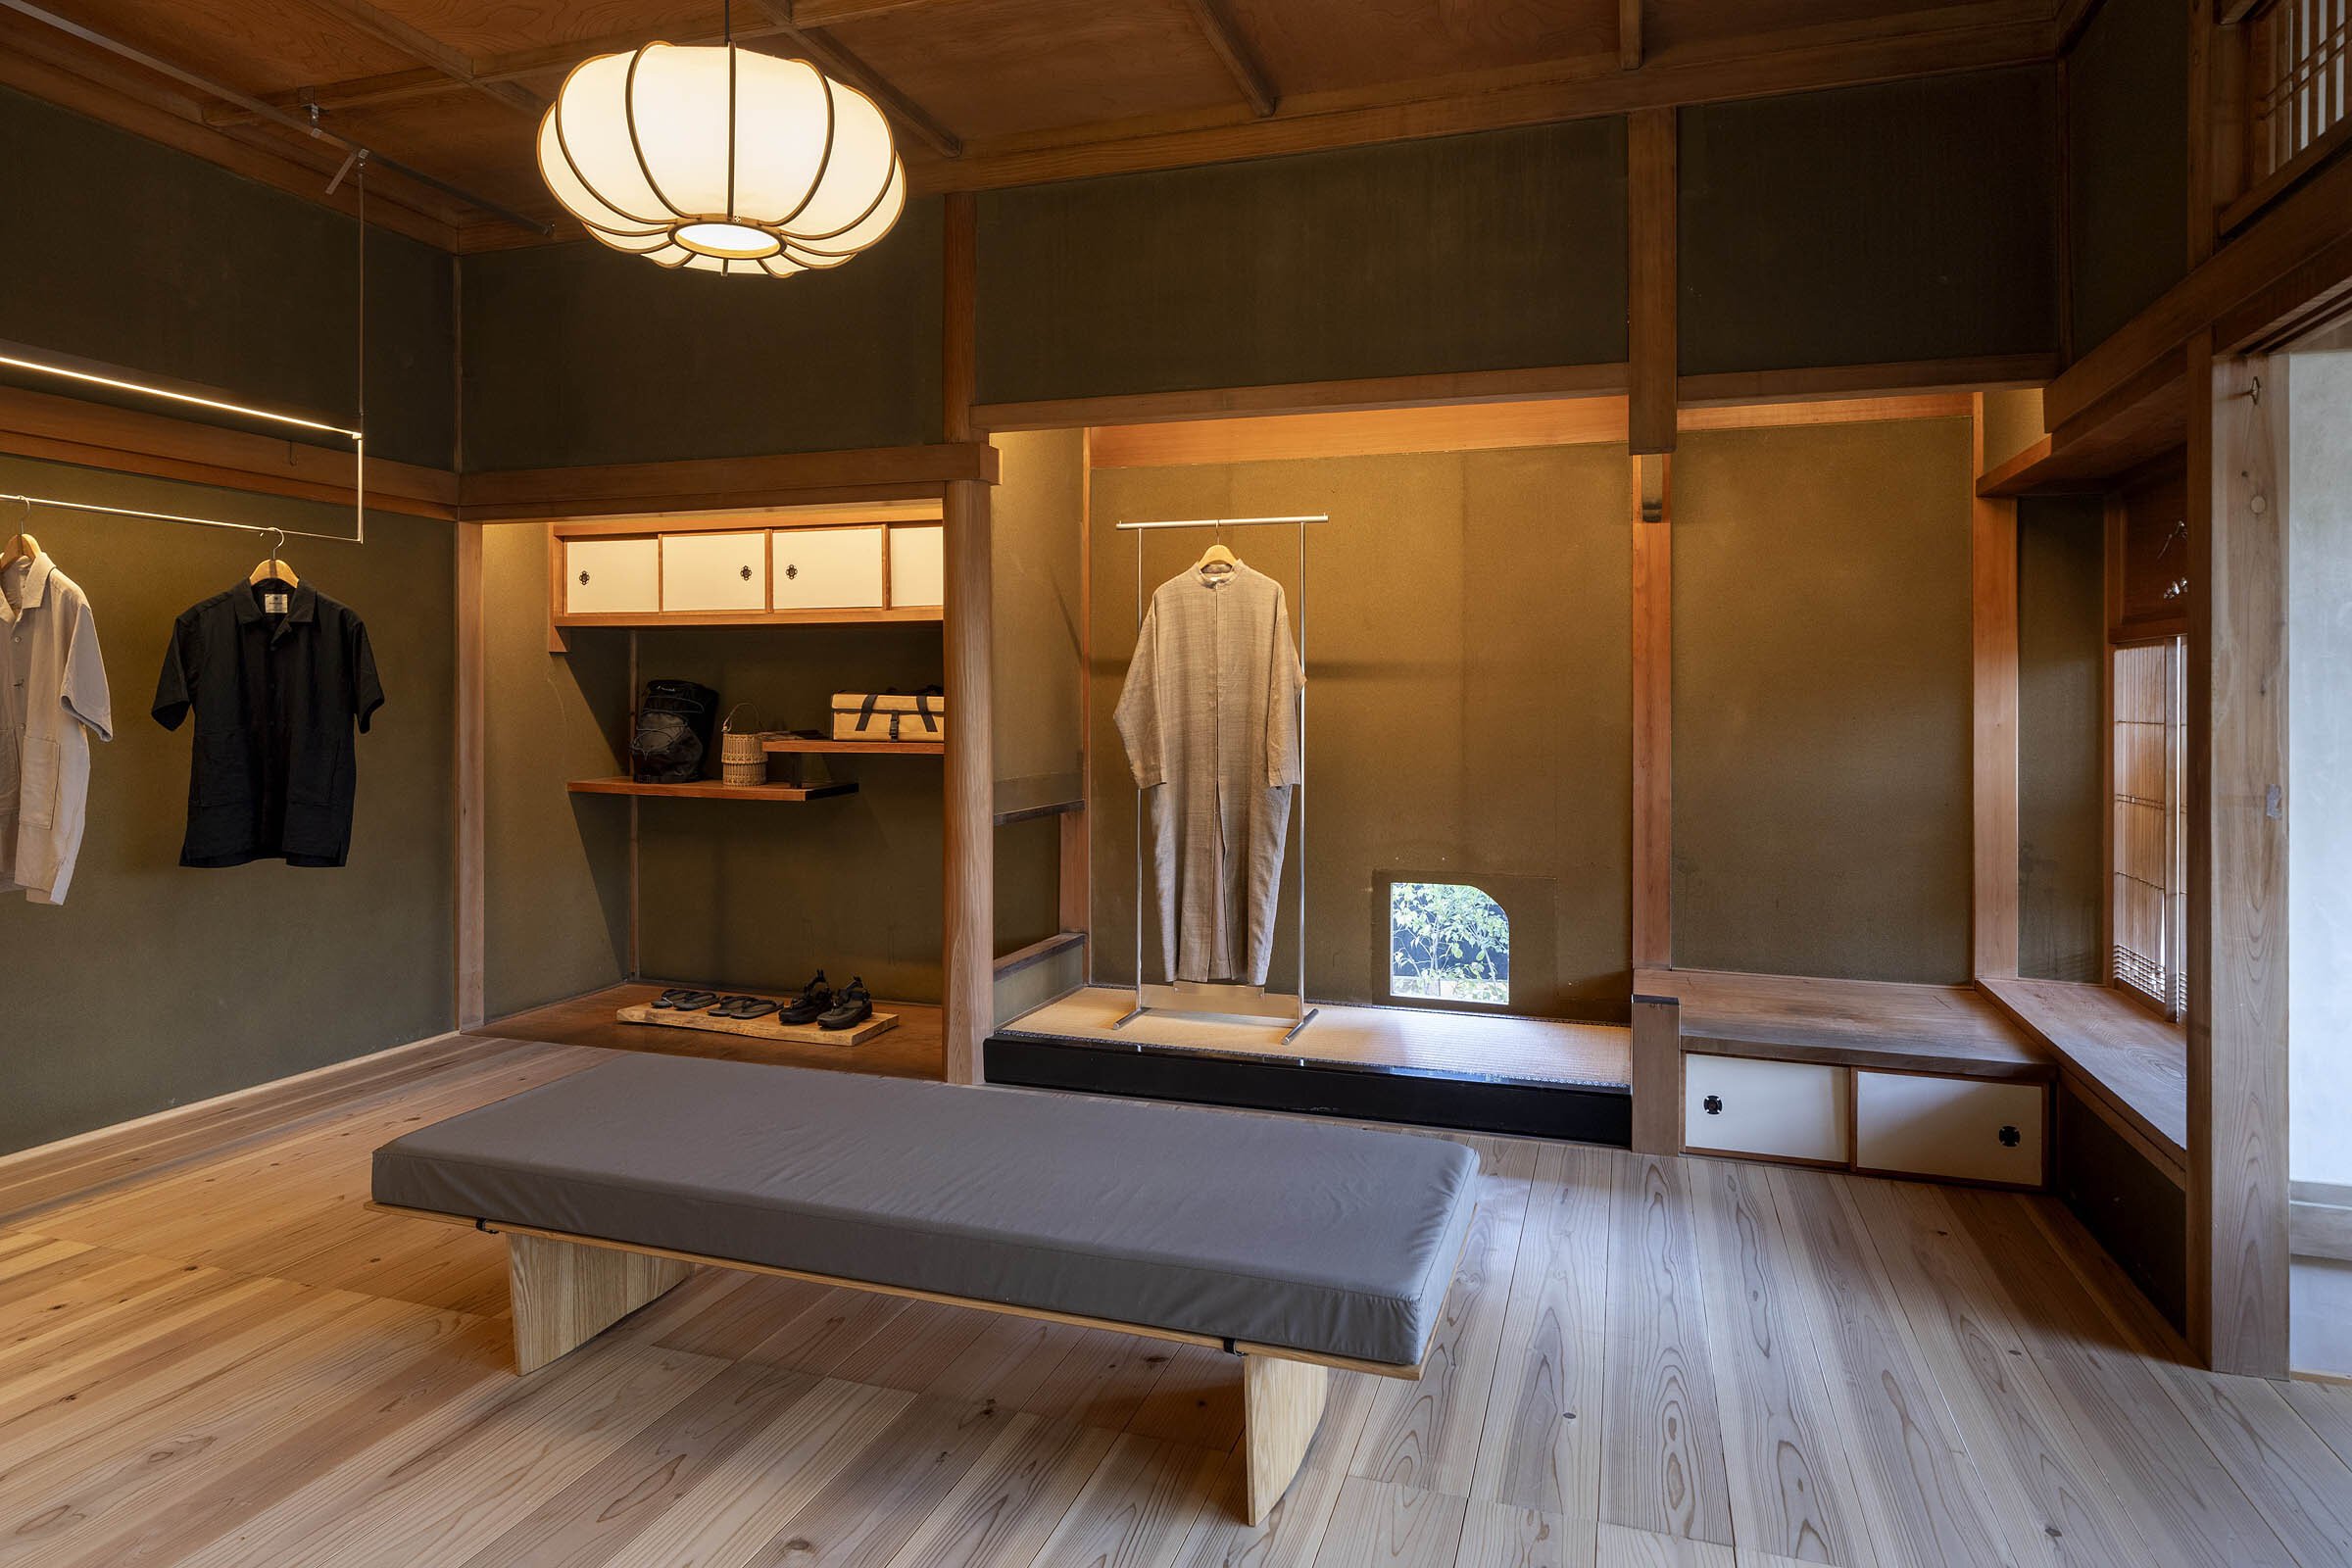  cafe co.の森井良幸がデザインしたスノーピークランドステーション京都嵐山のショップと床の間 